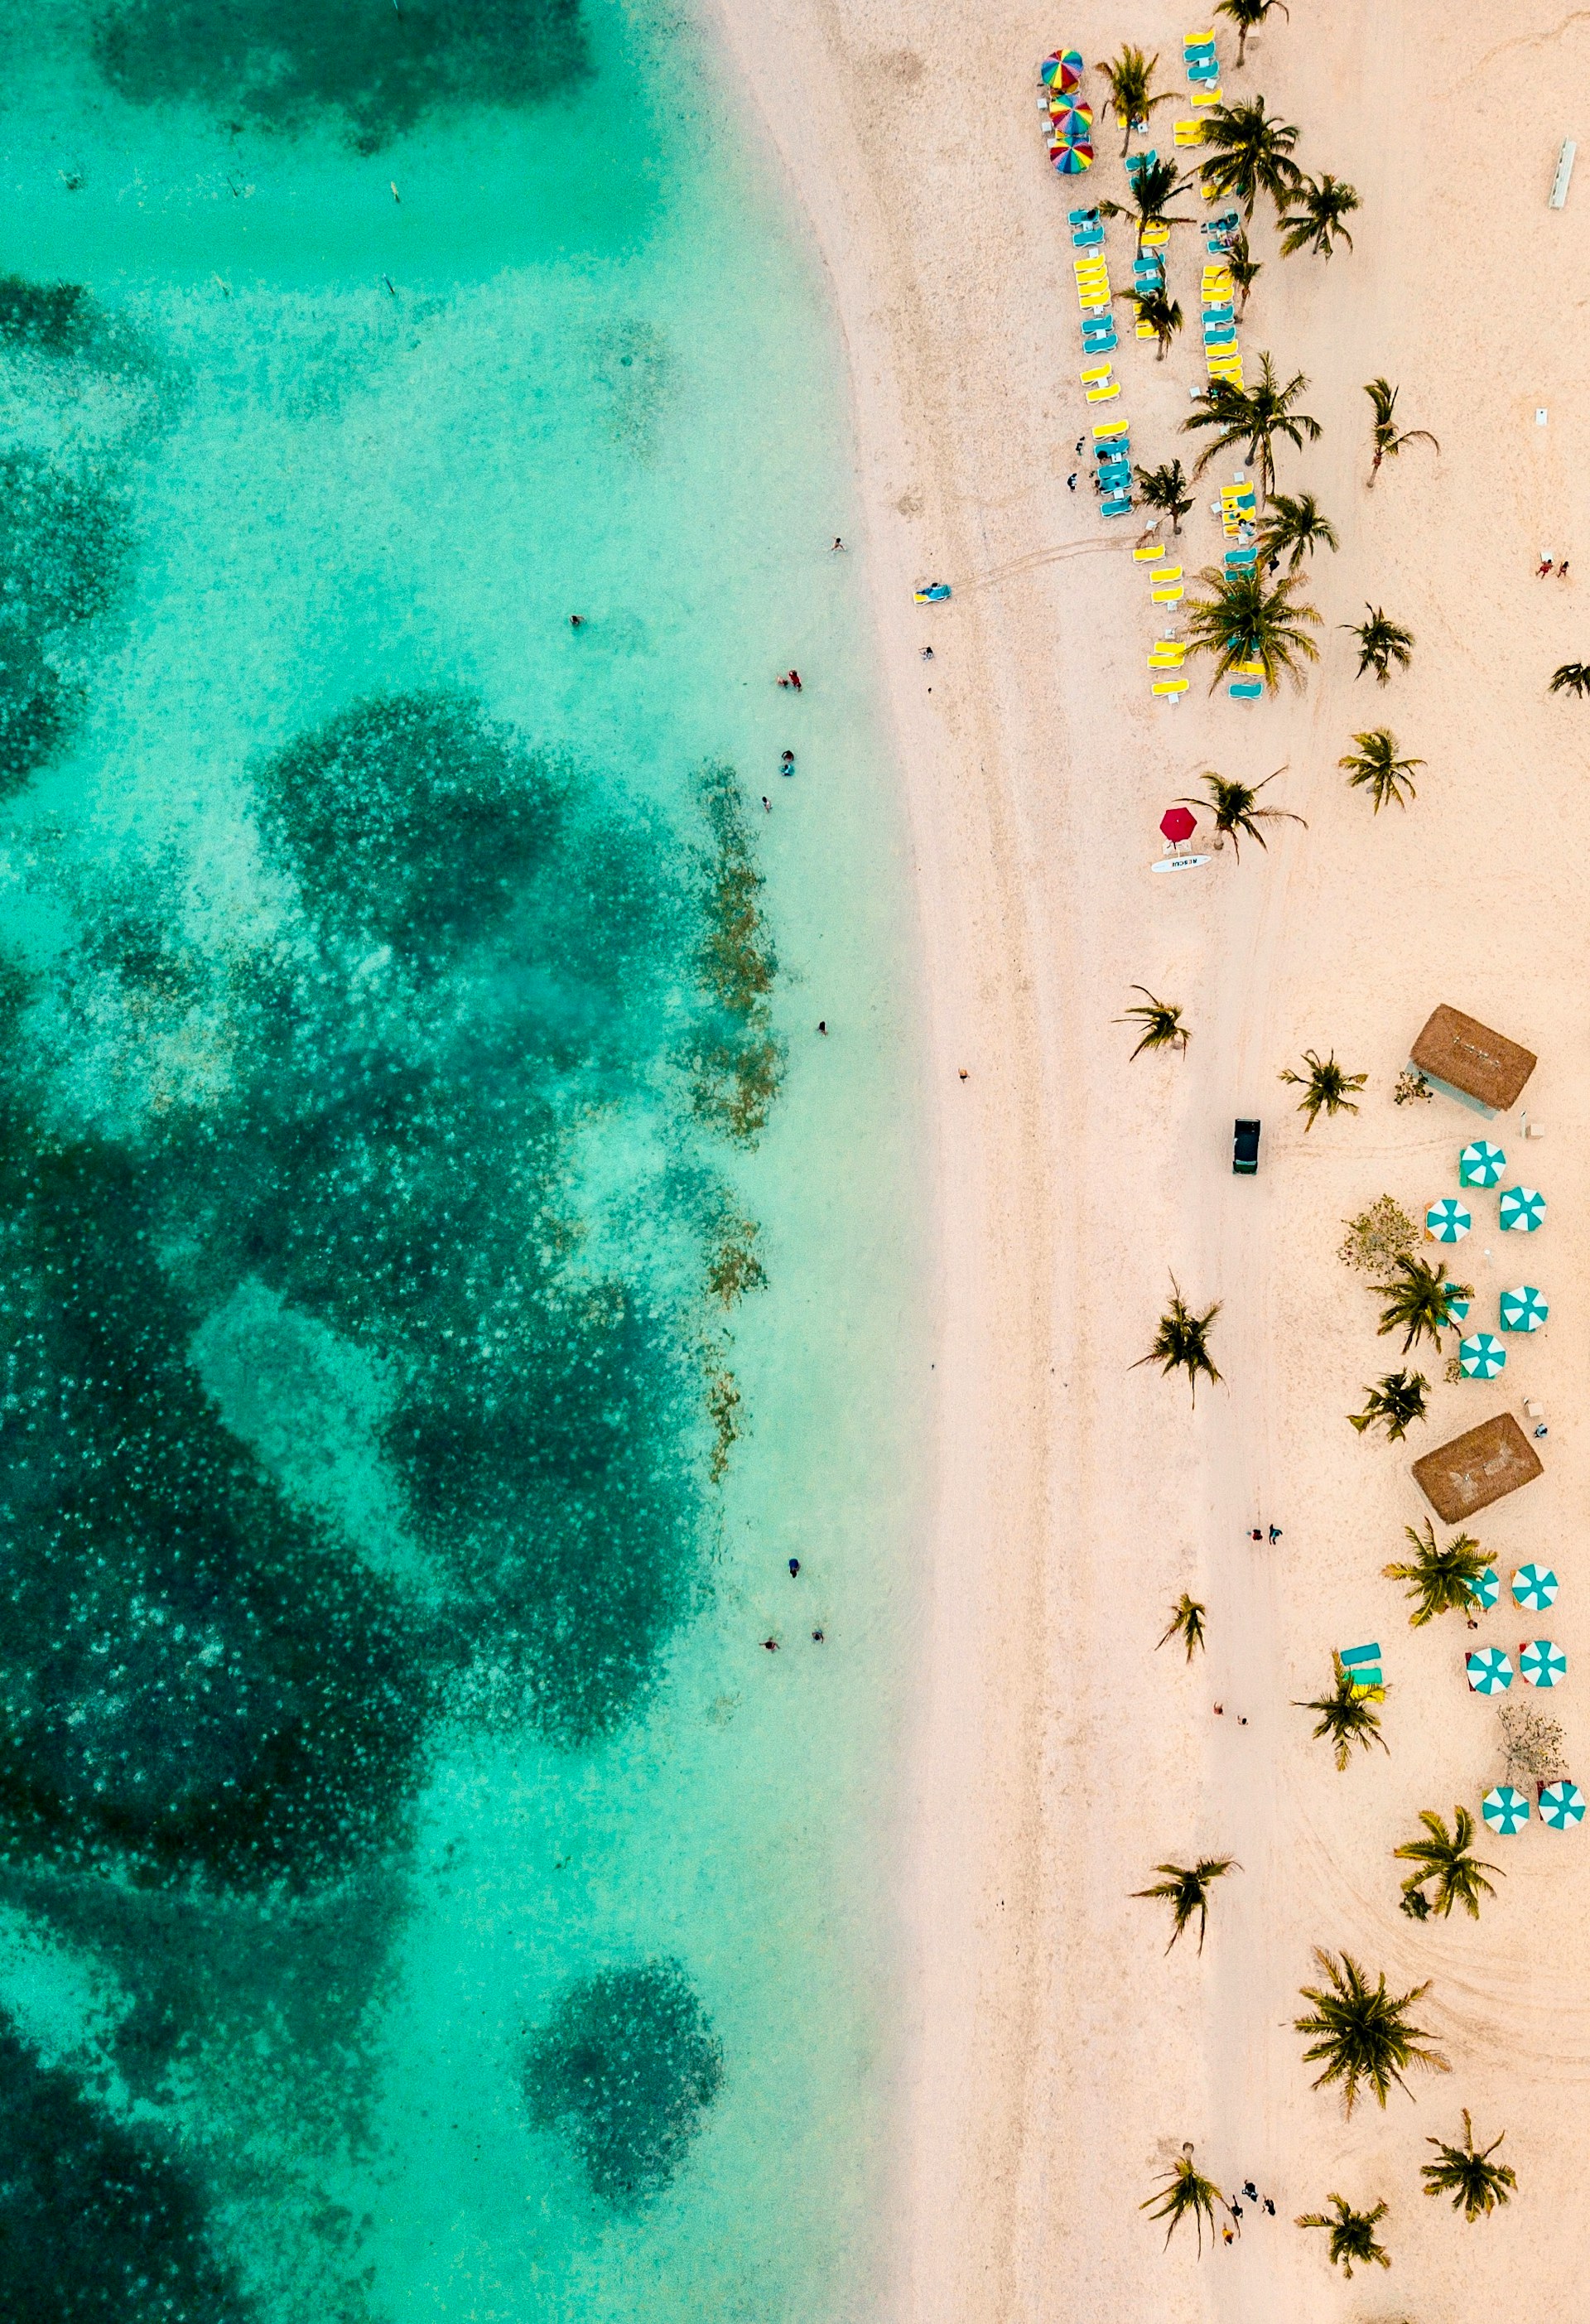 Flygfoto av en tropisk strand med turkost vatten, palmer och solstolar på en sandig strand i Bahamas.